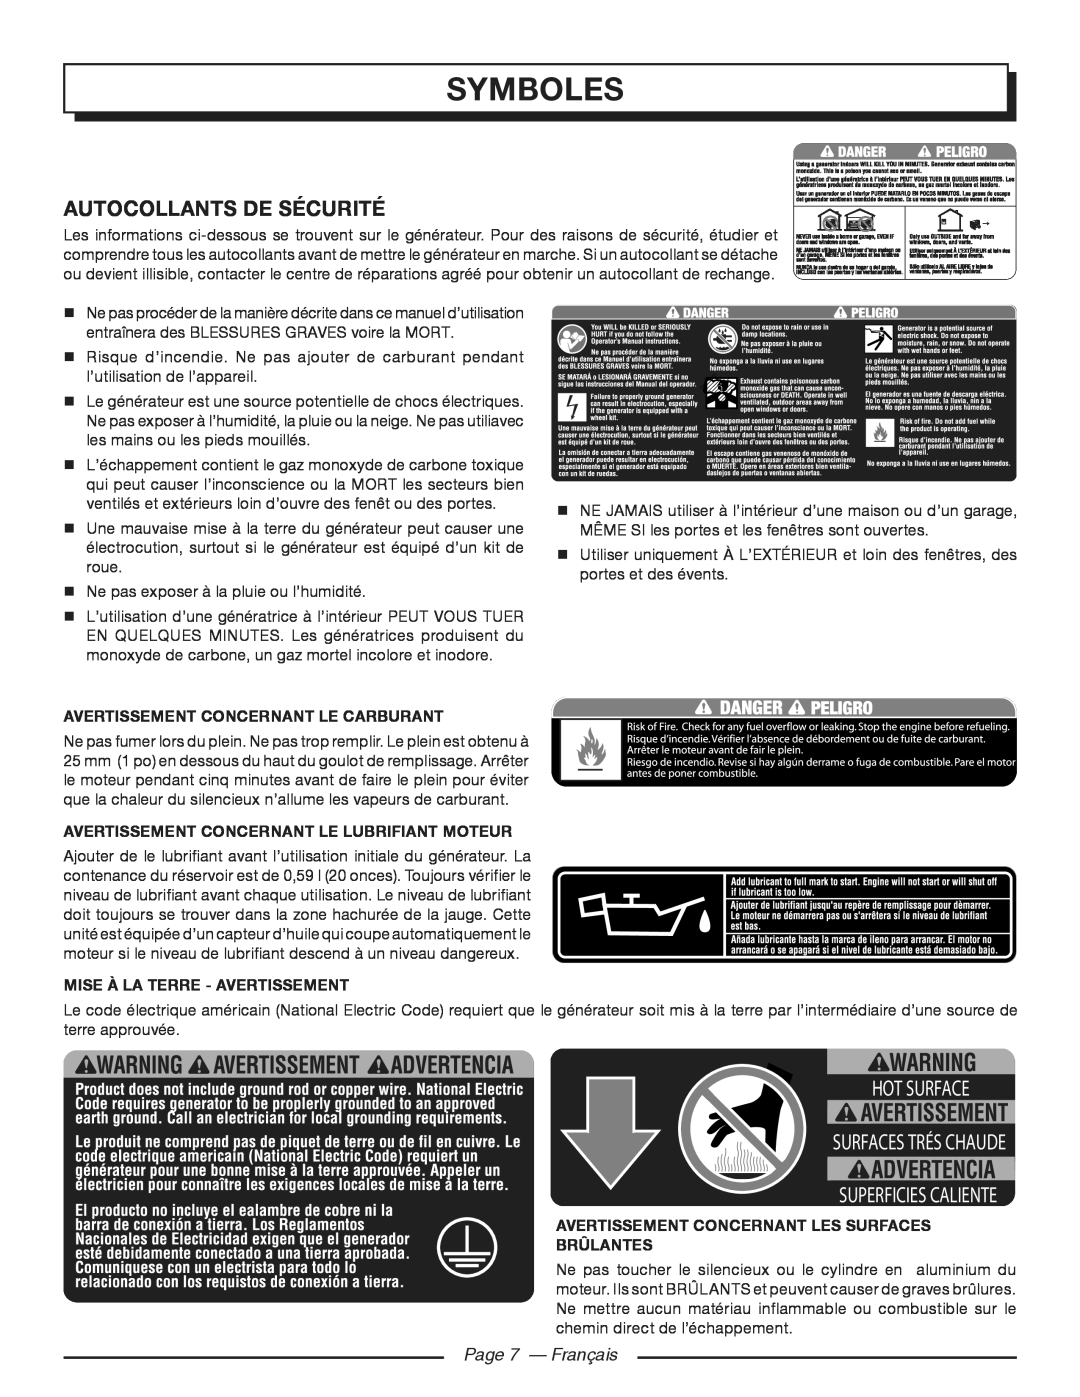 Homelite HGCA3000 Autocollants De Sécurité, Page 7 - Français, Symboles, Hot Surface, Superficies Caliente 